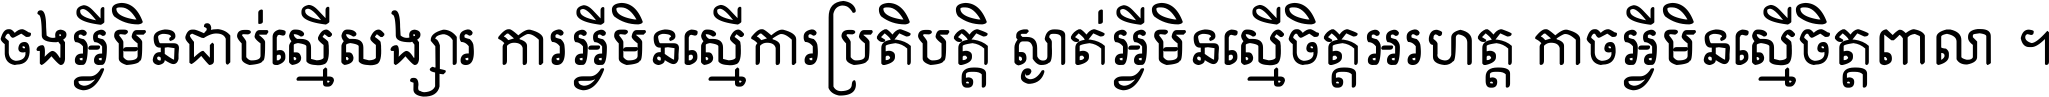 Khmer Khao I Dang